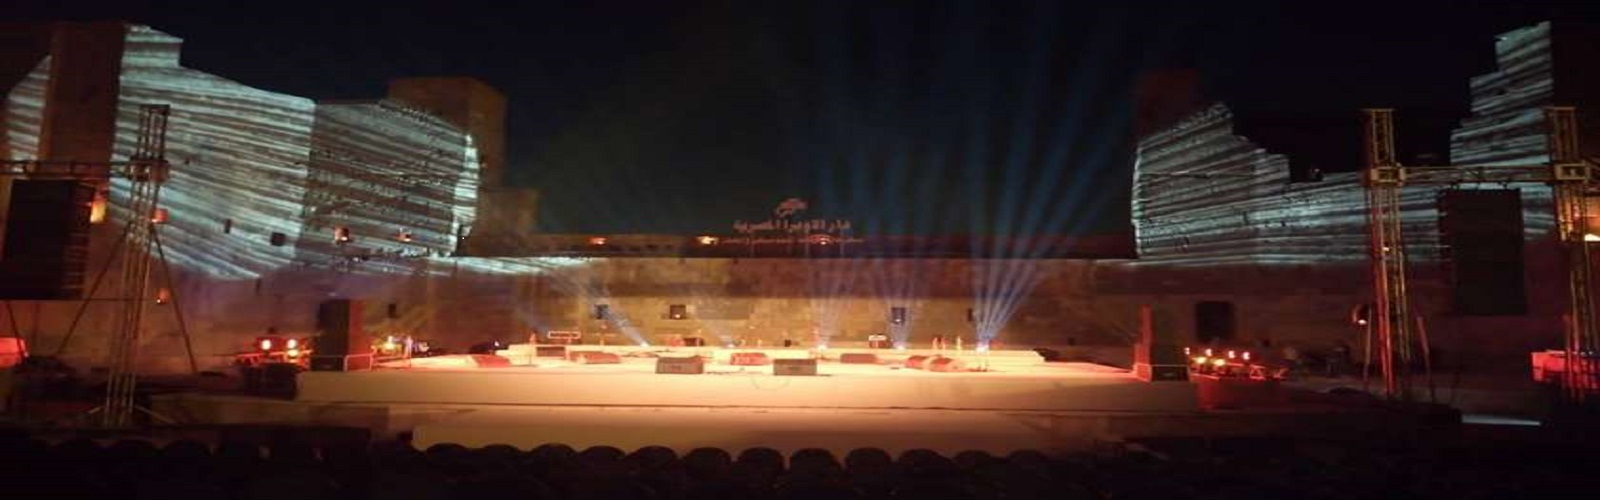 Mahka Theatre of Salah El Din Citadel